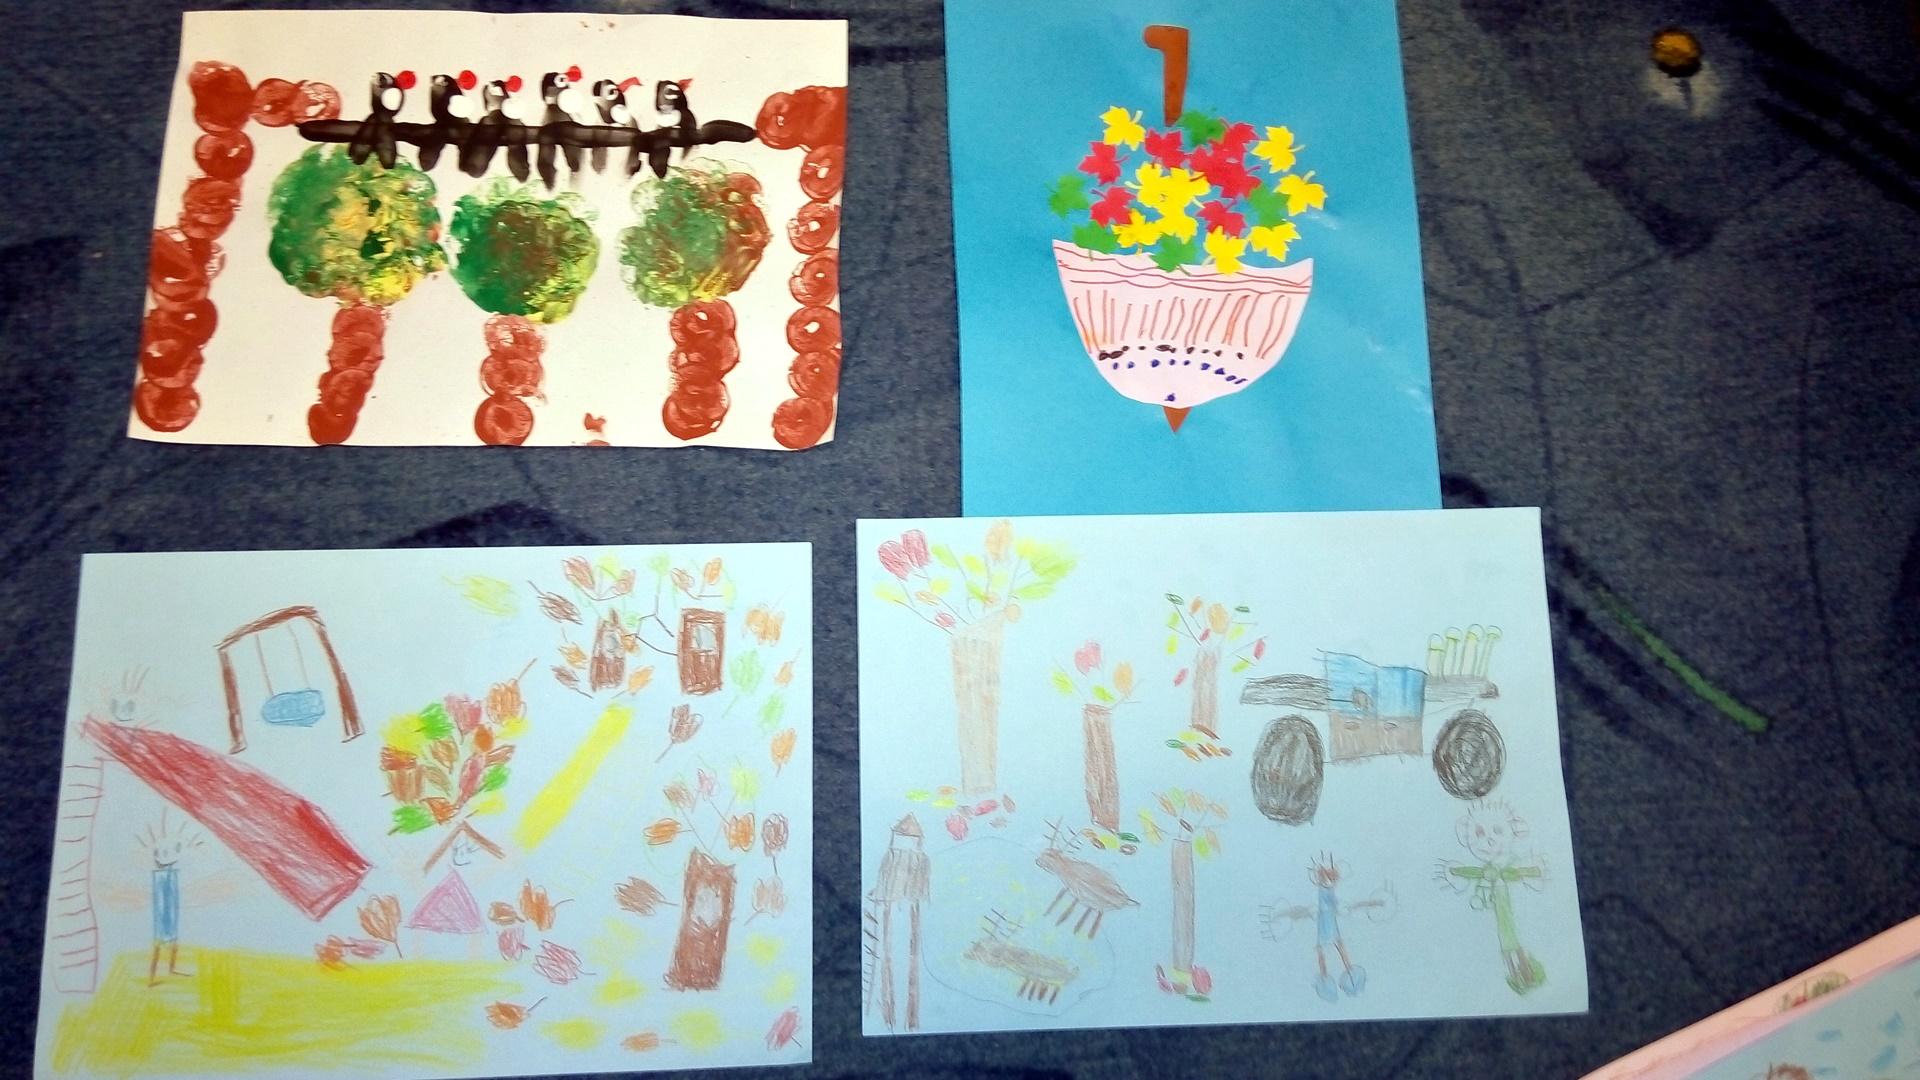 Az idei évben is készítettünk rajzokat a gyerekekkel az „Őszi hepe  - hupa…” című rajzpályázatra.
A gyerekek nagy izgalommal készítették munkáikat az ősz, mint évszak témakörben.
Mindkét csoportban készültek szebbnél – szebb alkotások vegyes technikákkal (rajzzal, festéssel, ragasztással).
A beküldött pályázatokat díjazták, így mindegyik kisgyerek emléklapot, a korcsoportjában 3. helyezést elért Schmidt Benett oklevelet és ajándékcsomagot kapott a szervezőktől. 
Szeretettel gratulálunk a gyerekeknek! 
